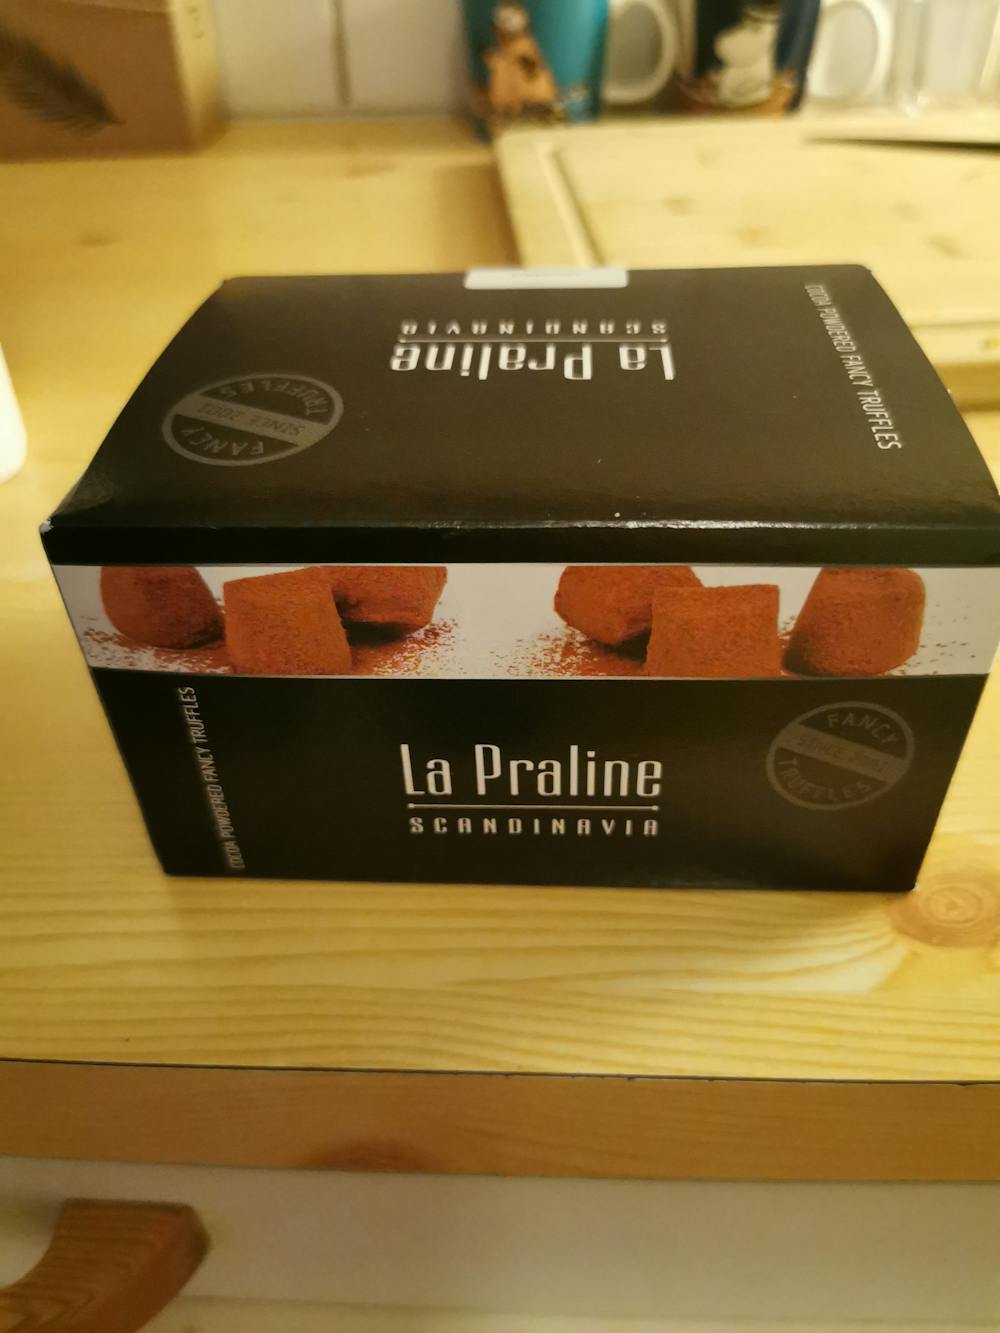 Konfektsjokolade, La Praline